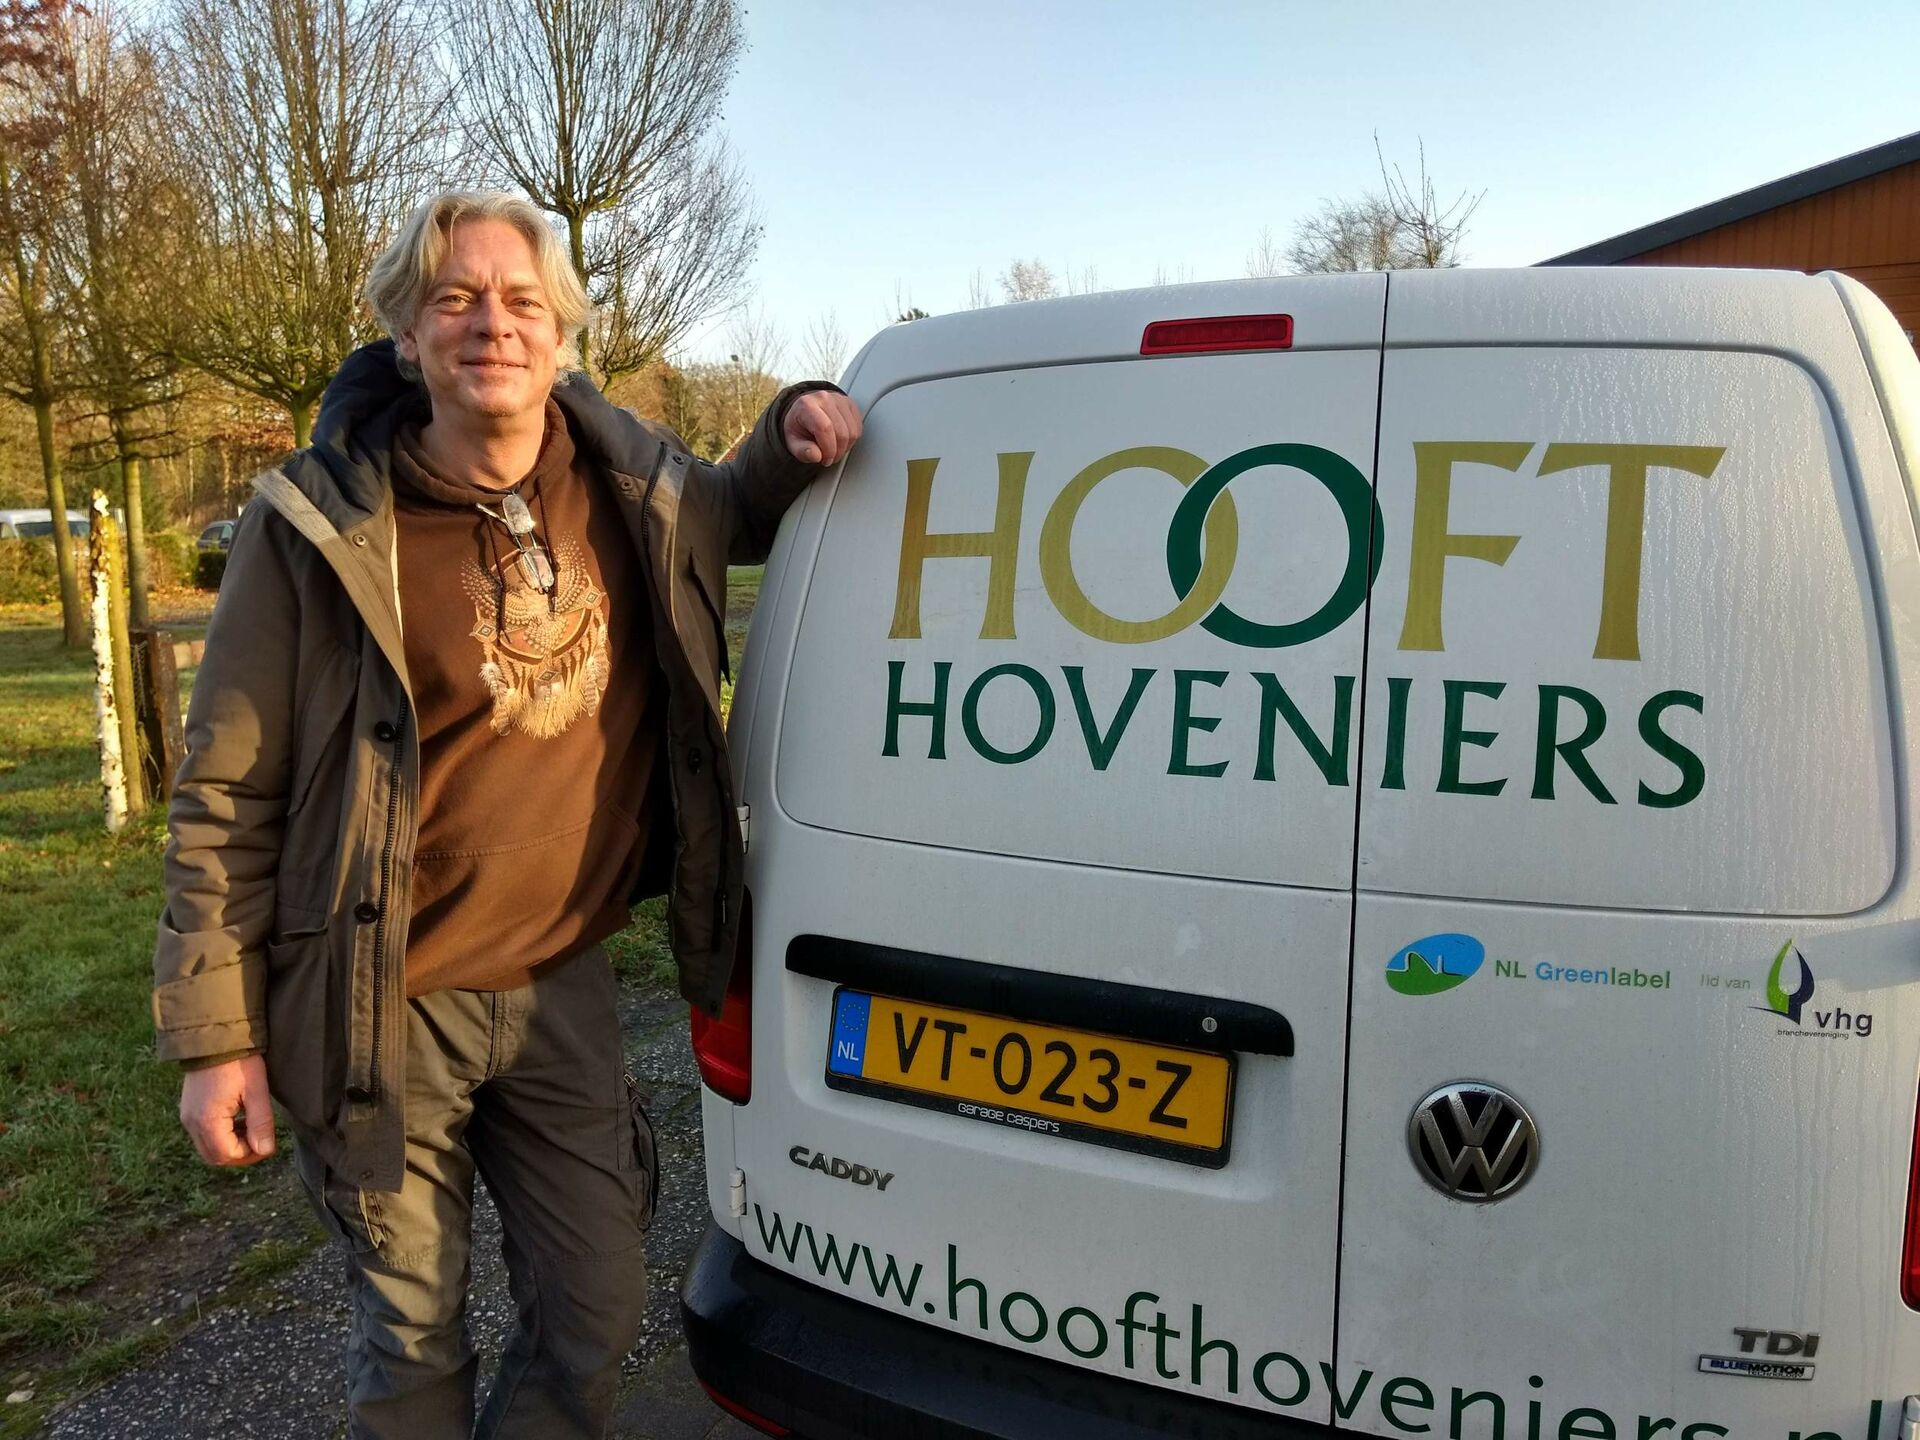 Jan Pieter Hooft - Hooft Hoveniers - Duurzaamste Hovenier 2019